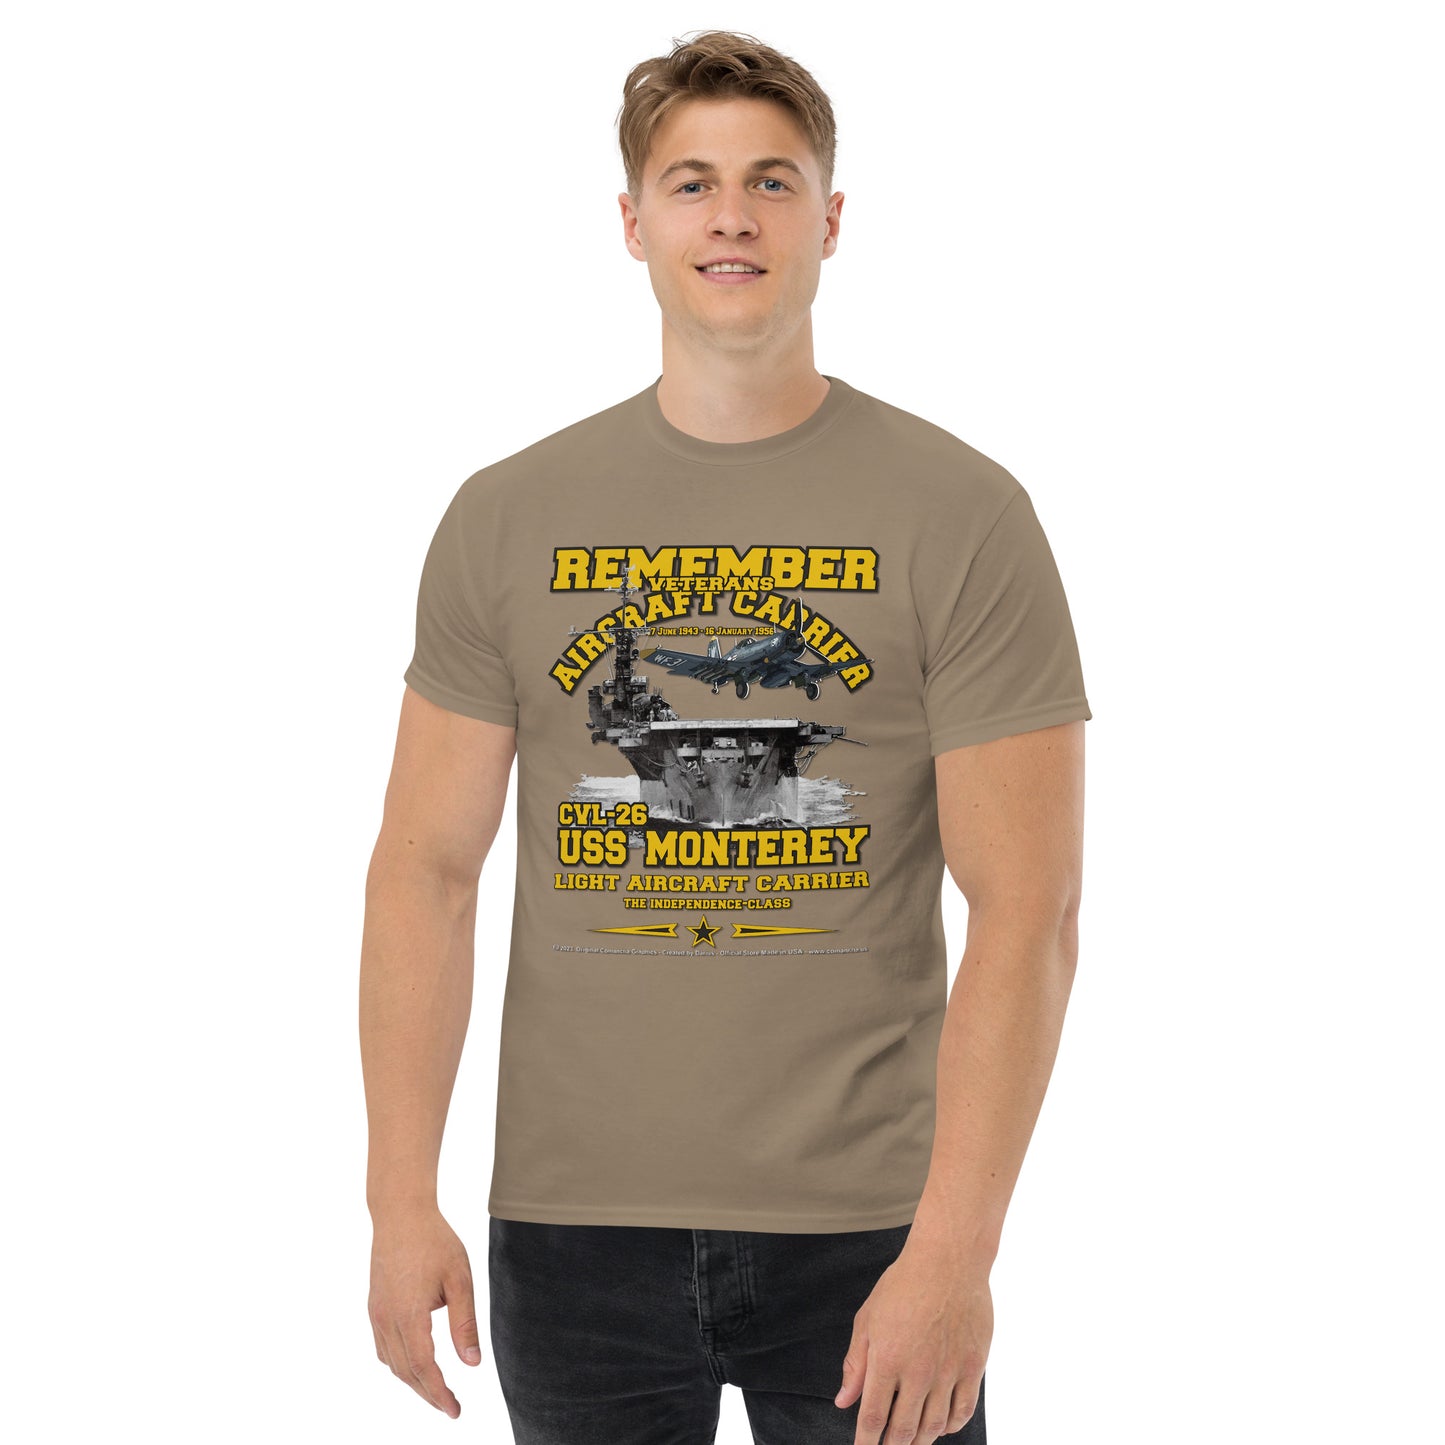 USS MONTEREY CVL-26 Aircraft Carrier T-Shirt